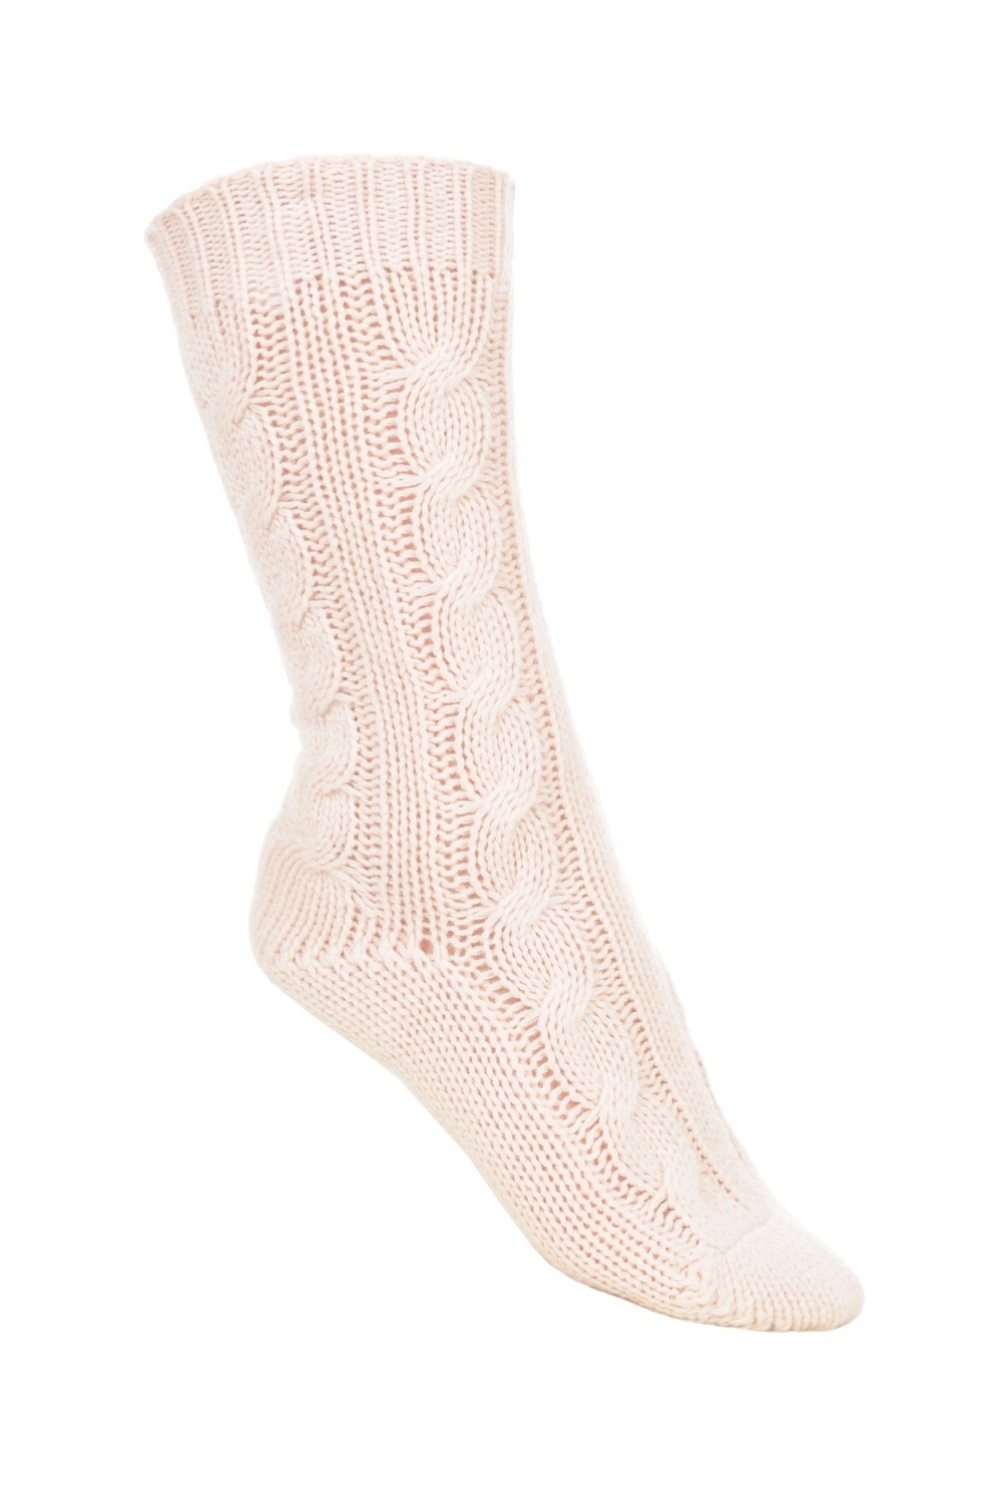 Cashmere accessories socks pedibus natural ecru 37 41